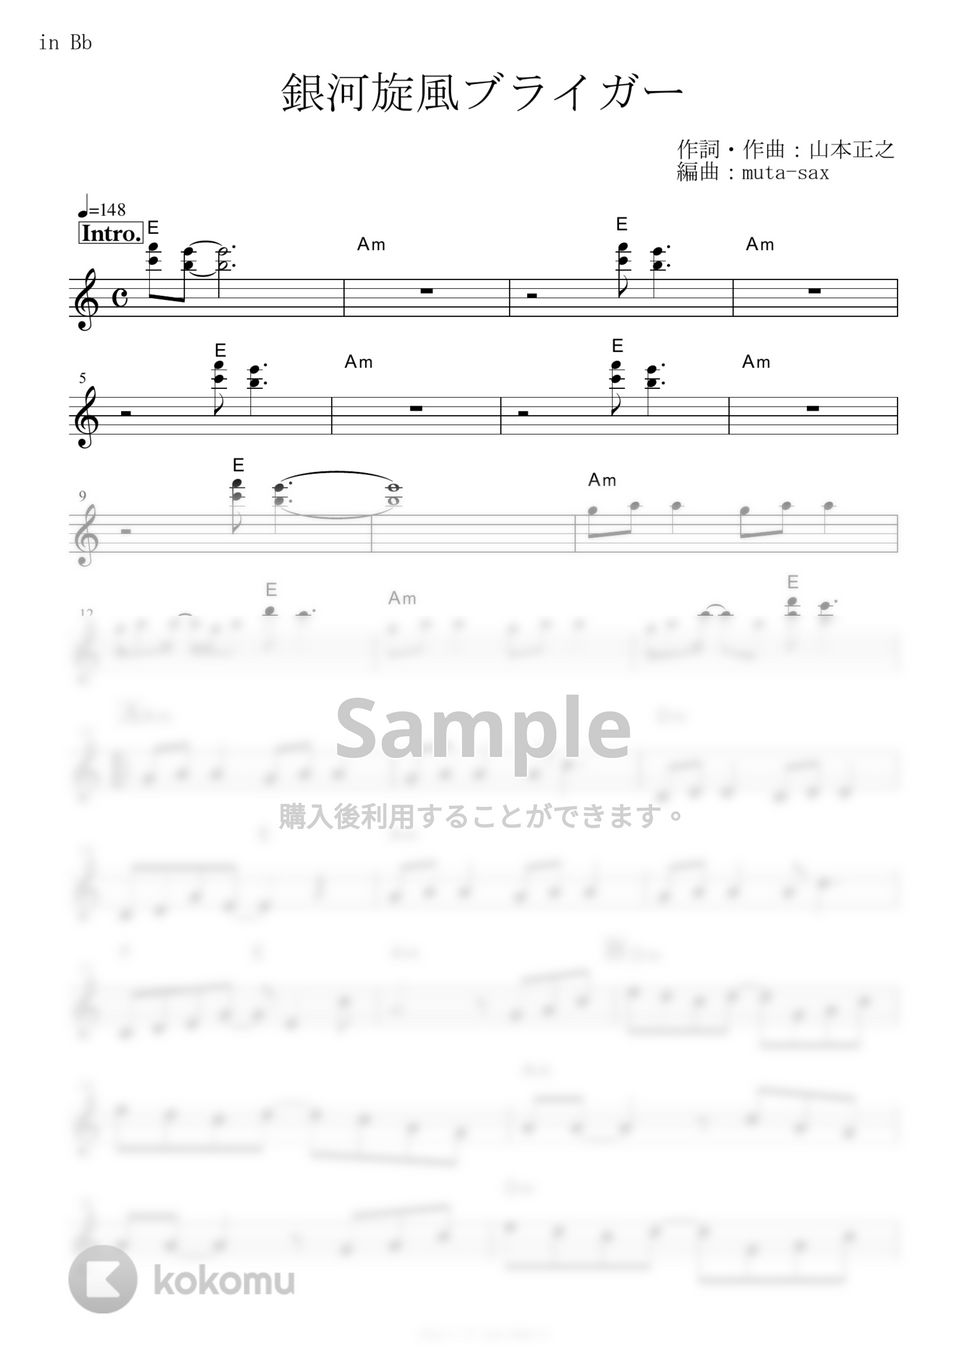 たいらいさお - 銀河旋風ブライガー (『銀河旋風ブライガー』 / in Bb) by muta-sax